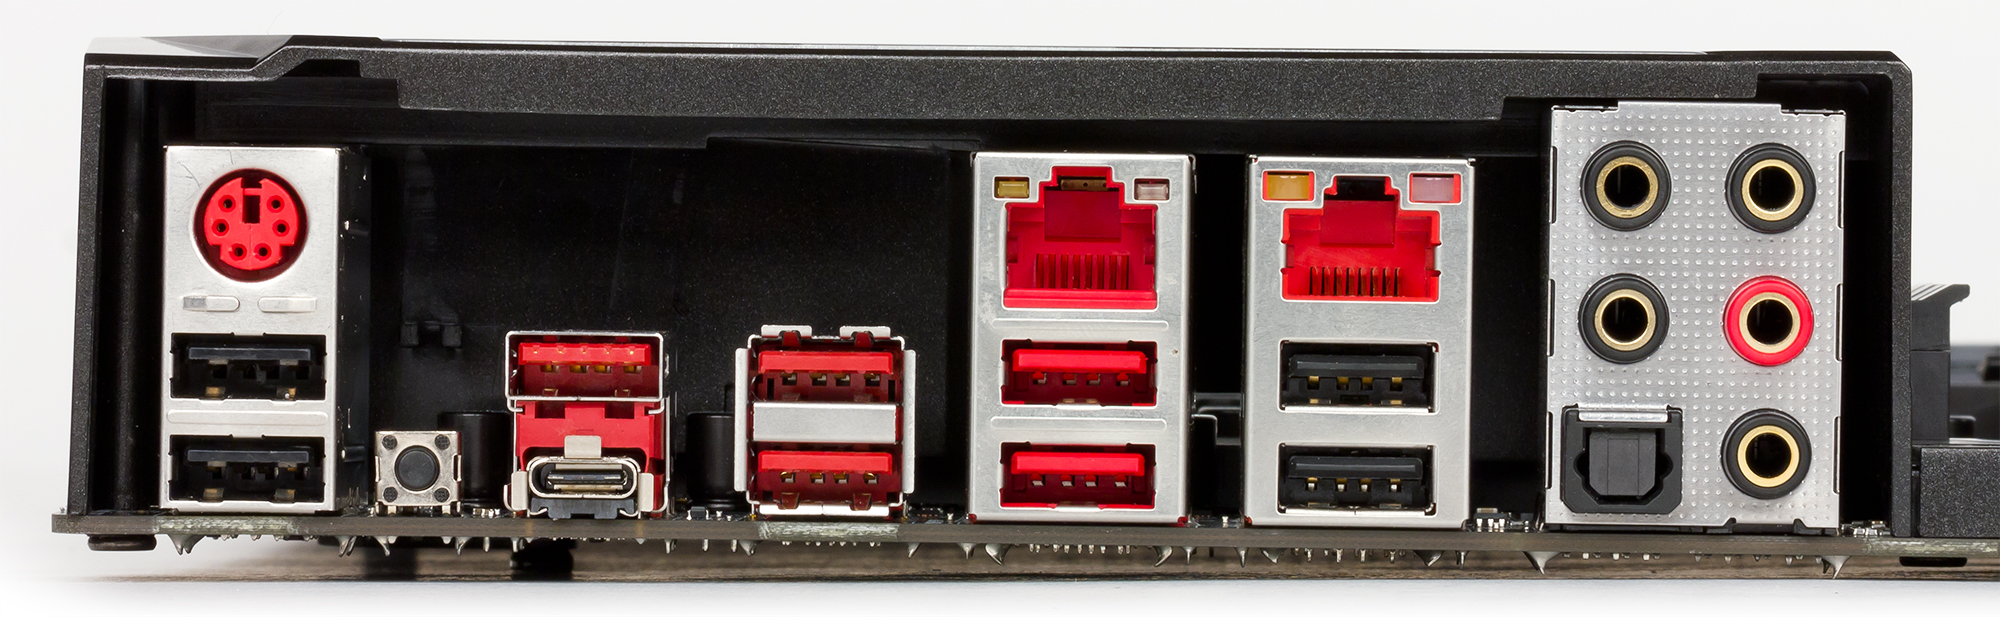 Жёлтый USB разъём на задней панели материнской платы. Интерфейсы задней панели современного ПК. Материнская плата MSI x670. Шкаф с розетками EC-MSI-x5de495. X99 reg